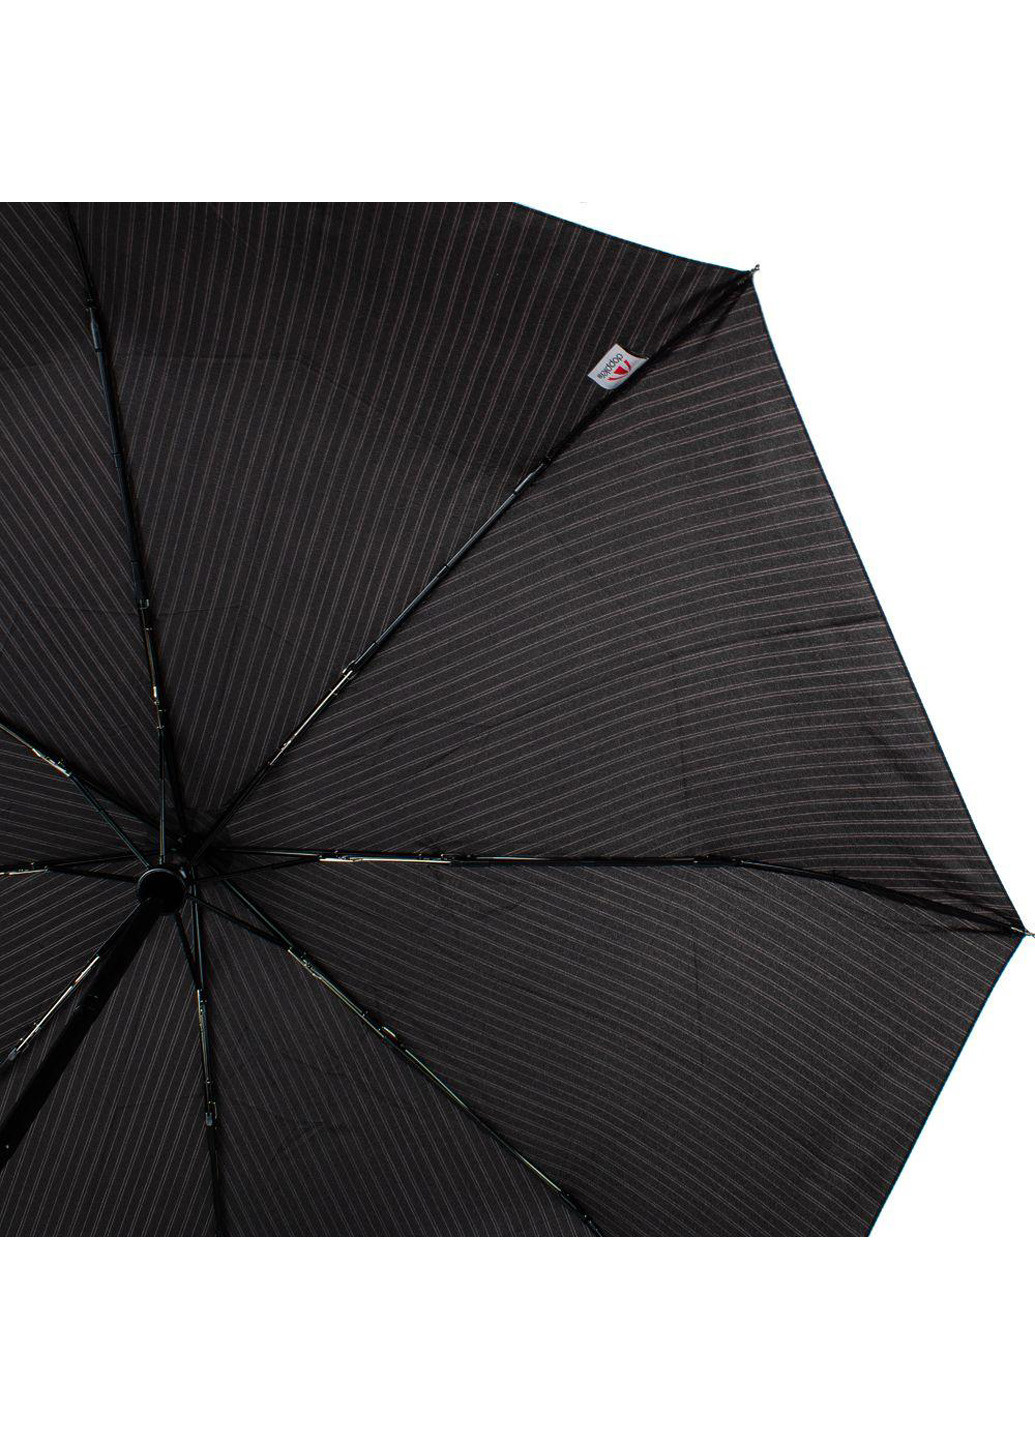 Мужской складной зонт полный автомат 98 см Doppler (194321620)